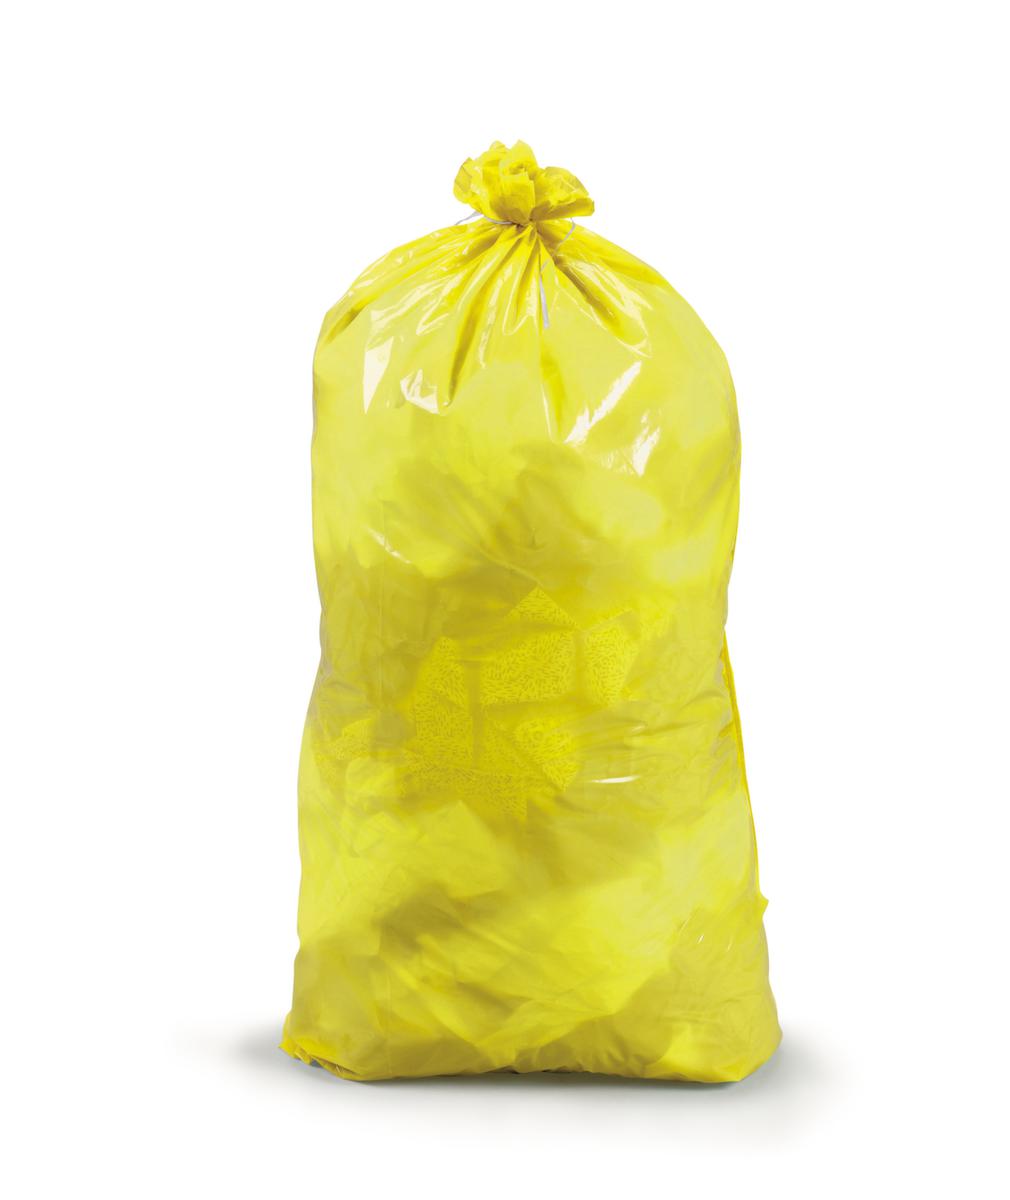 Raja Scheurvaste vuilniszak met sluitband, 60 l, geel  ZOOM